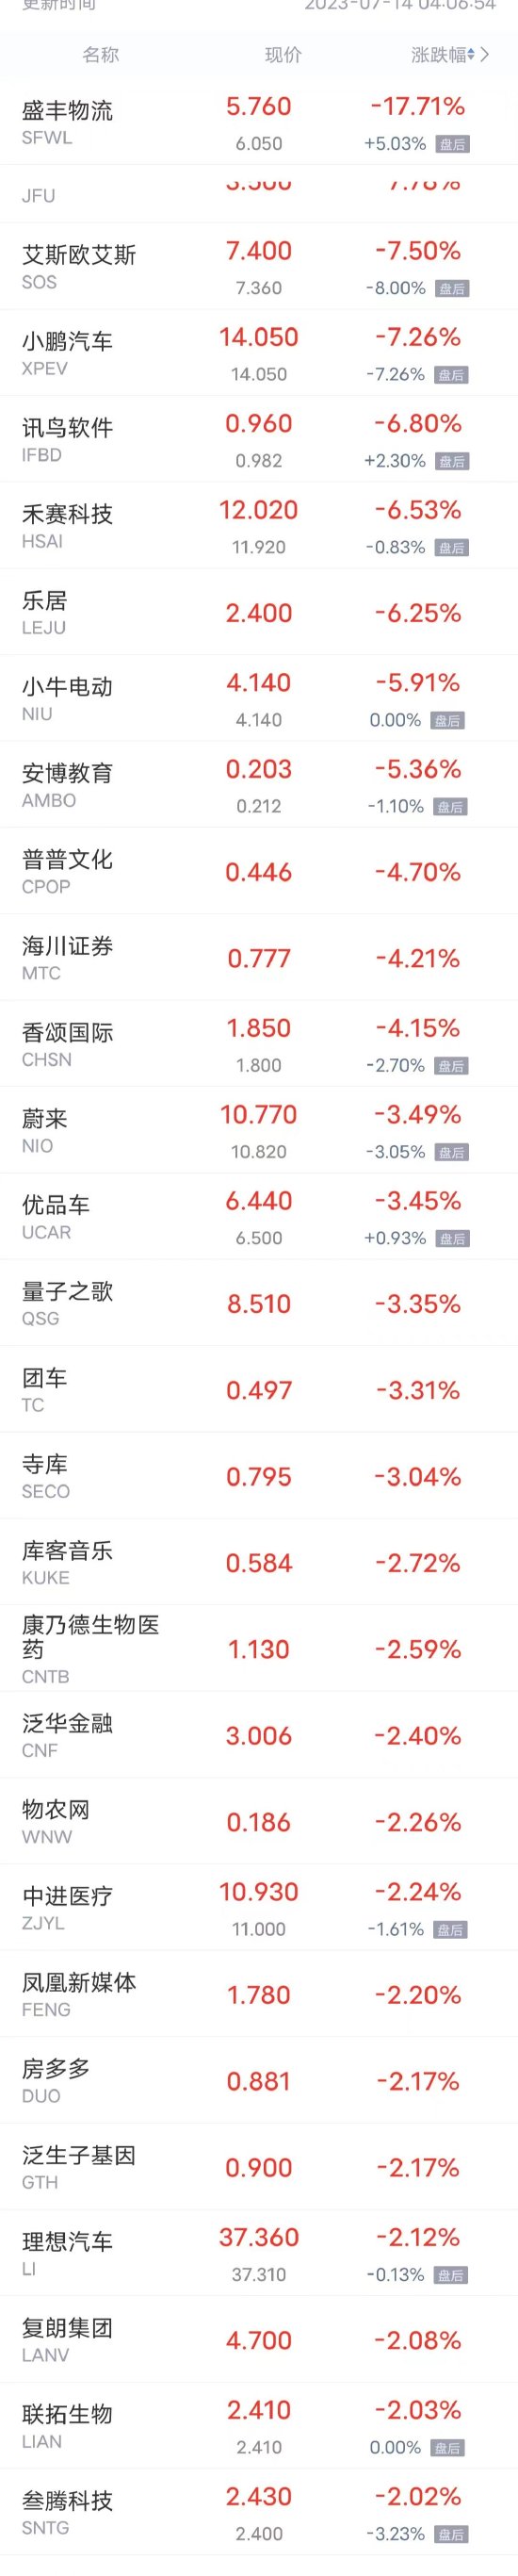 周四热门中概股多数上涨 已连涨5个交易日 京东、哔哩哔哩涨超5%，唯品会涨超3%